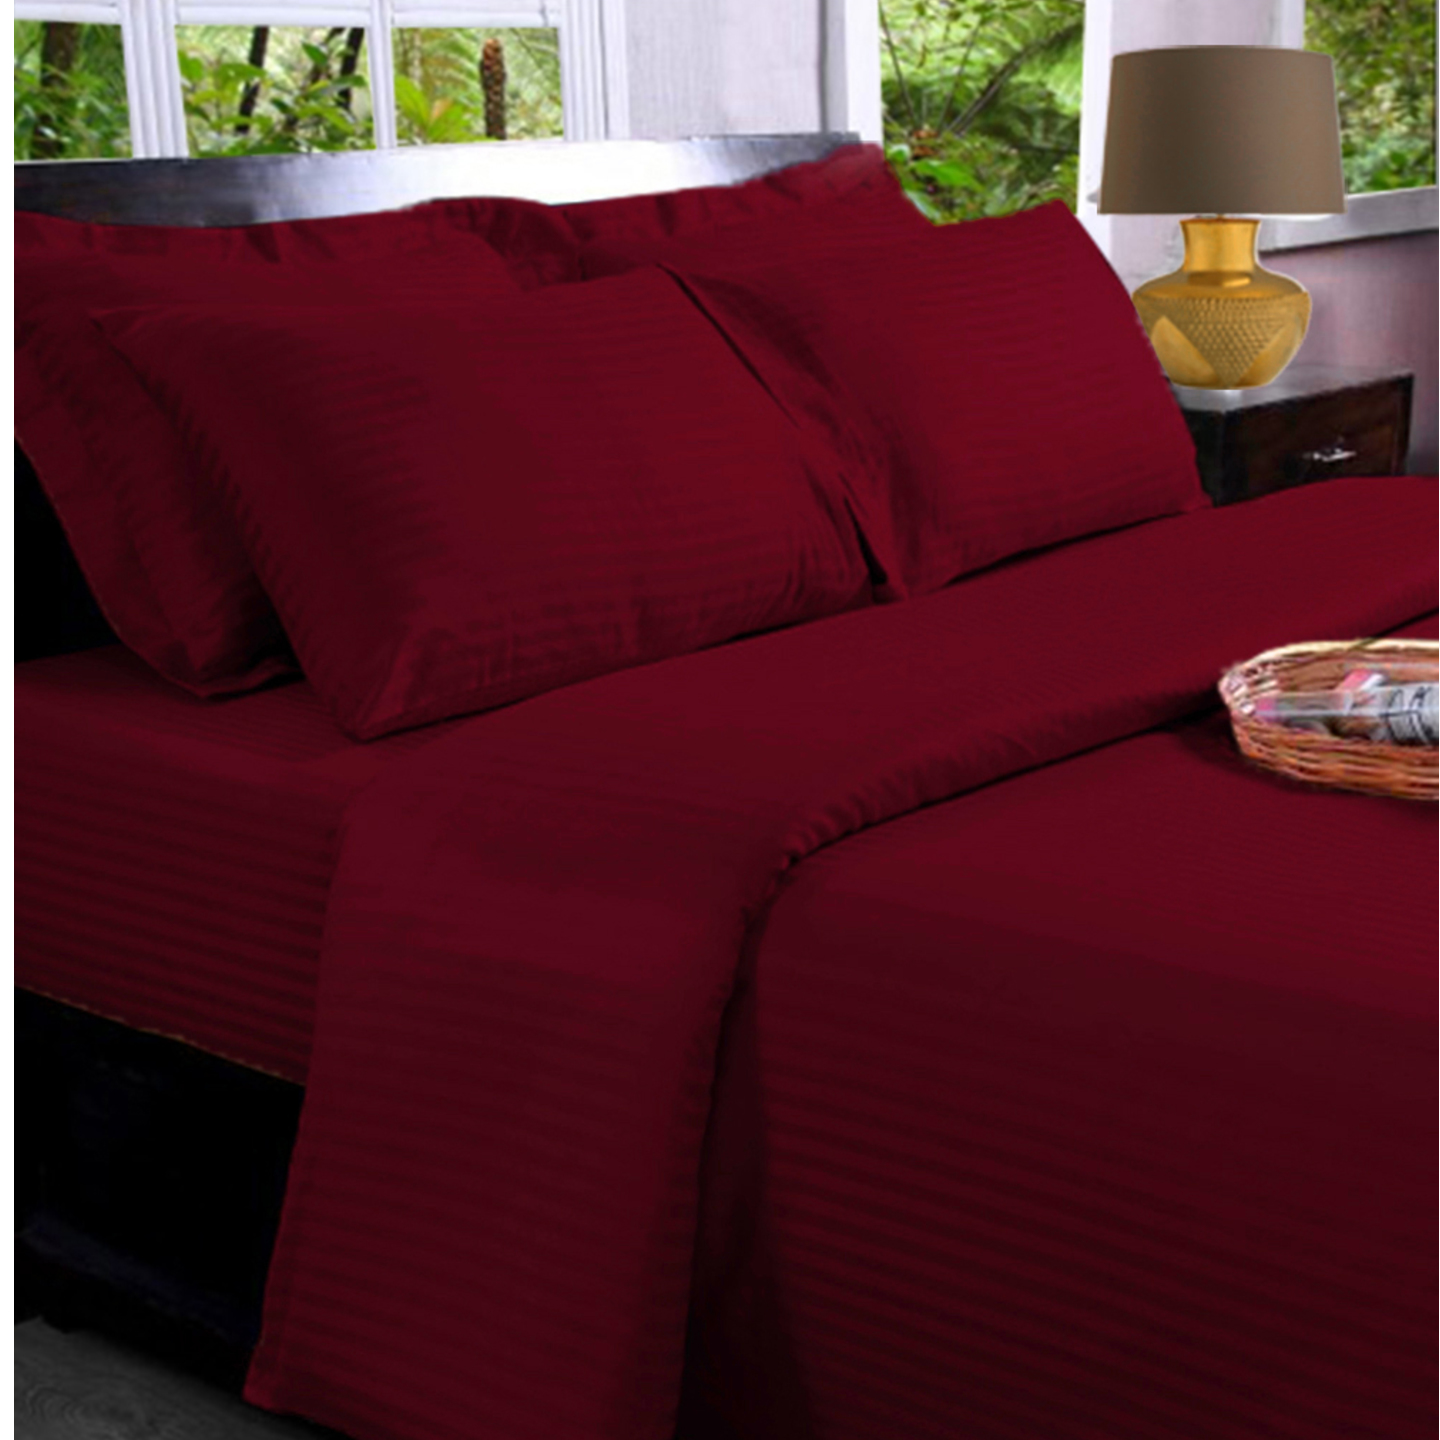 Burgundy Maroon -   Premium Sateen - 330 TC - Bed Sheet Set - Queen Size